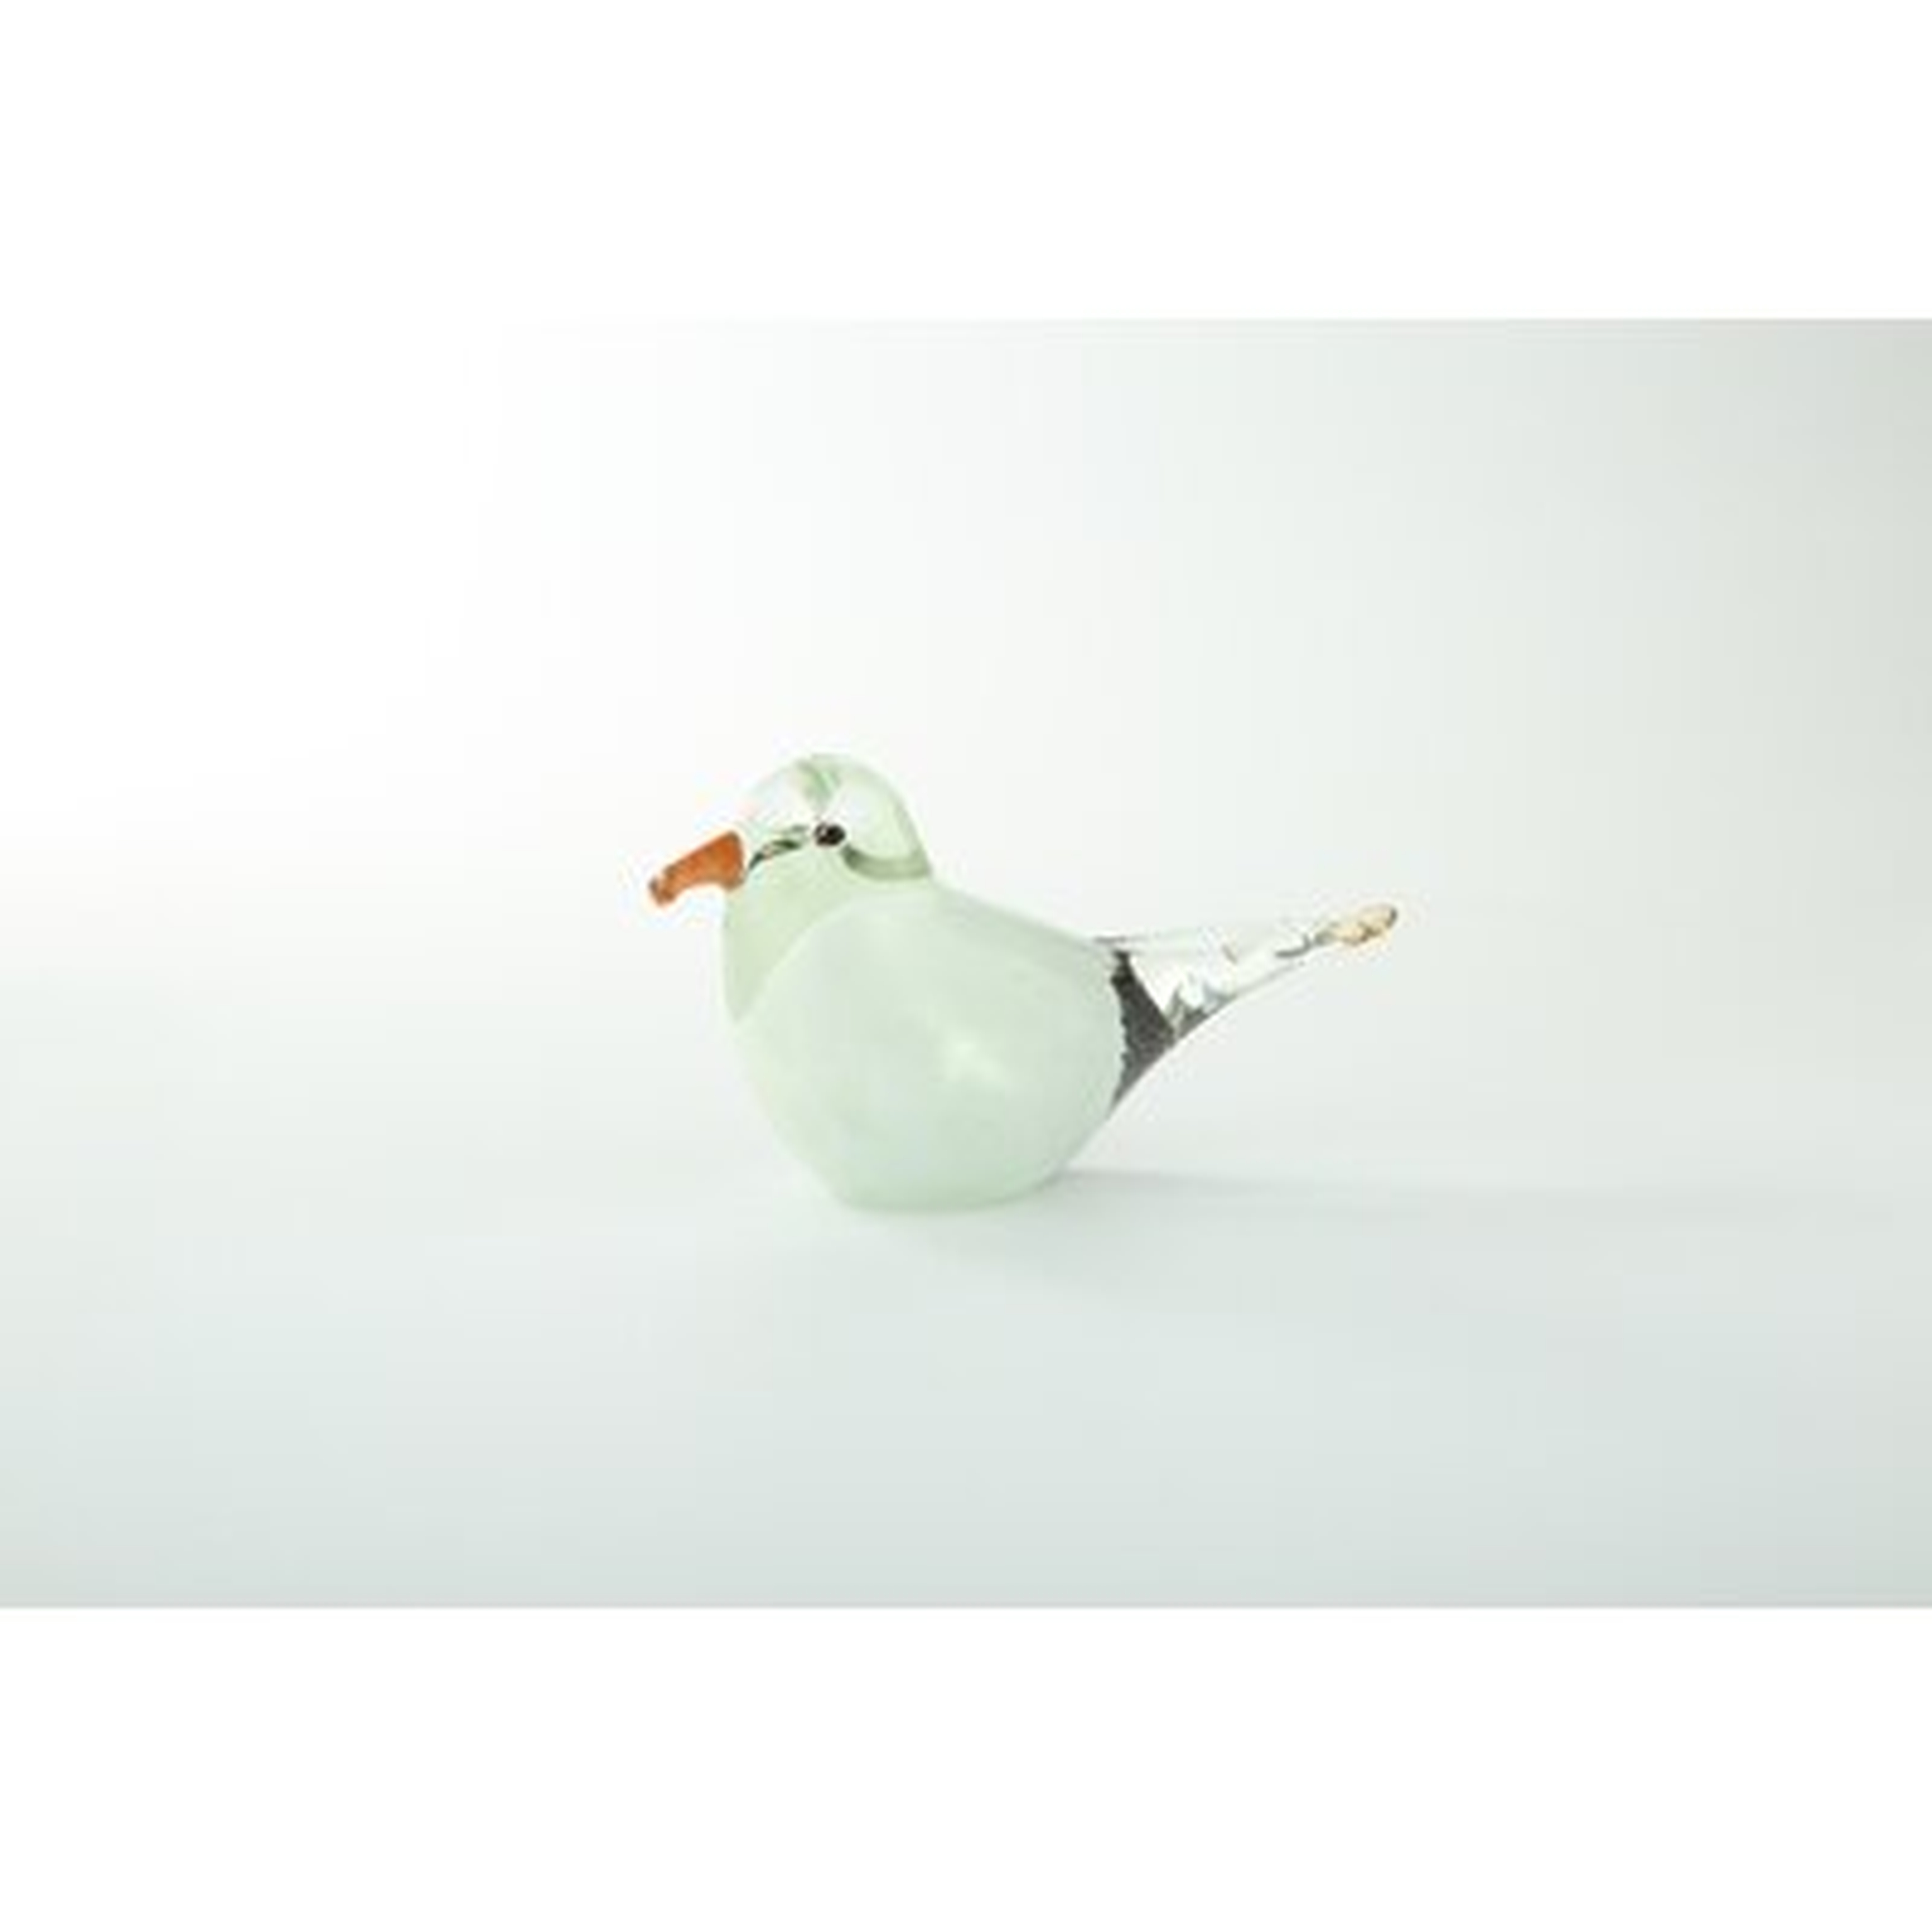 Quaker Glass Bird - Wayfair